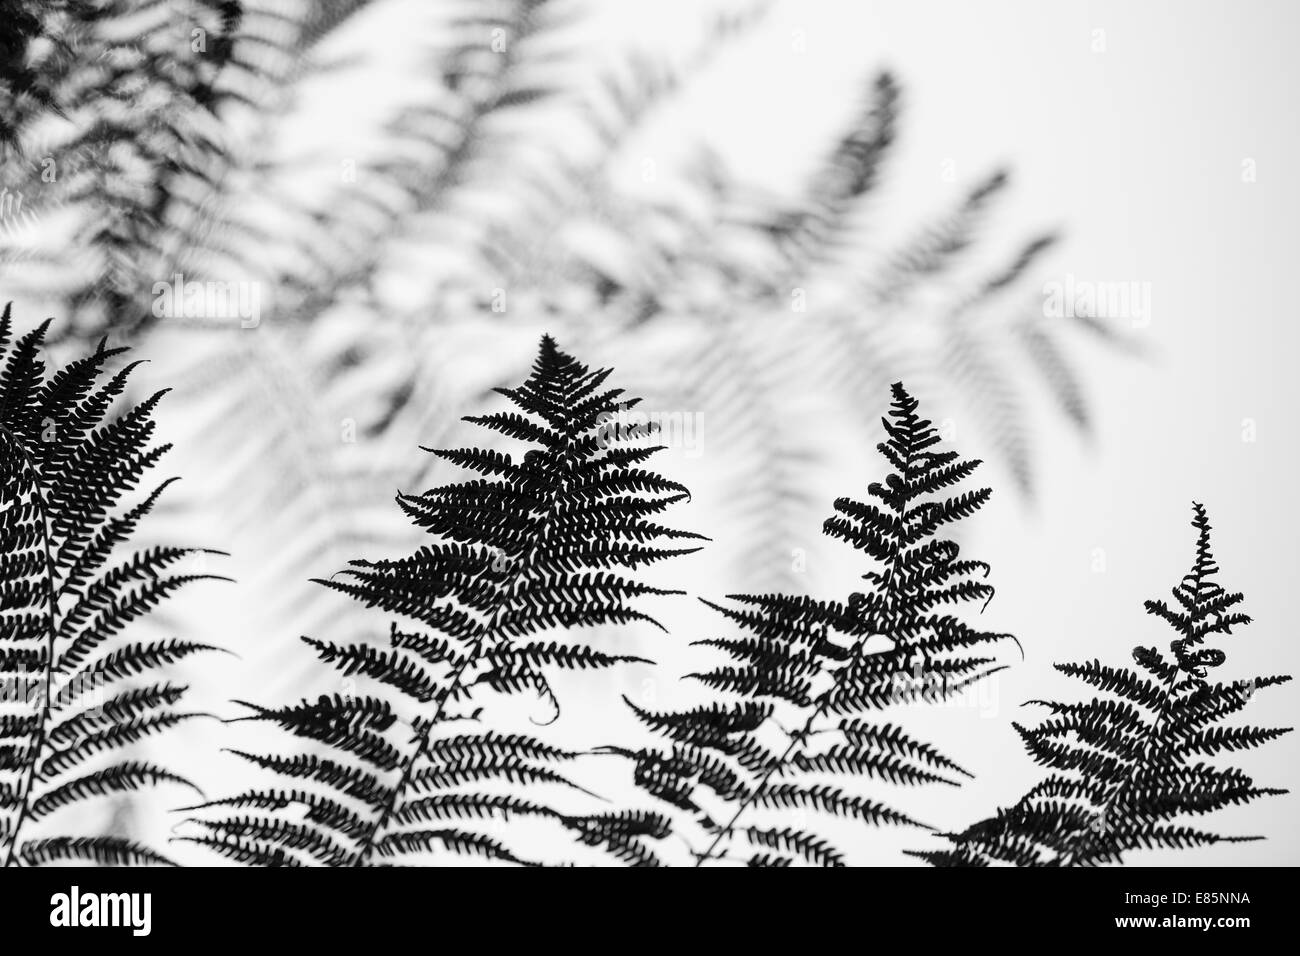 Albero di foglie di felce fotografata per fare un interessante immagine astratta Foto Stock